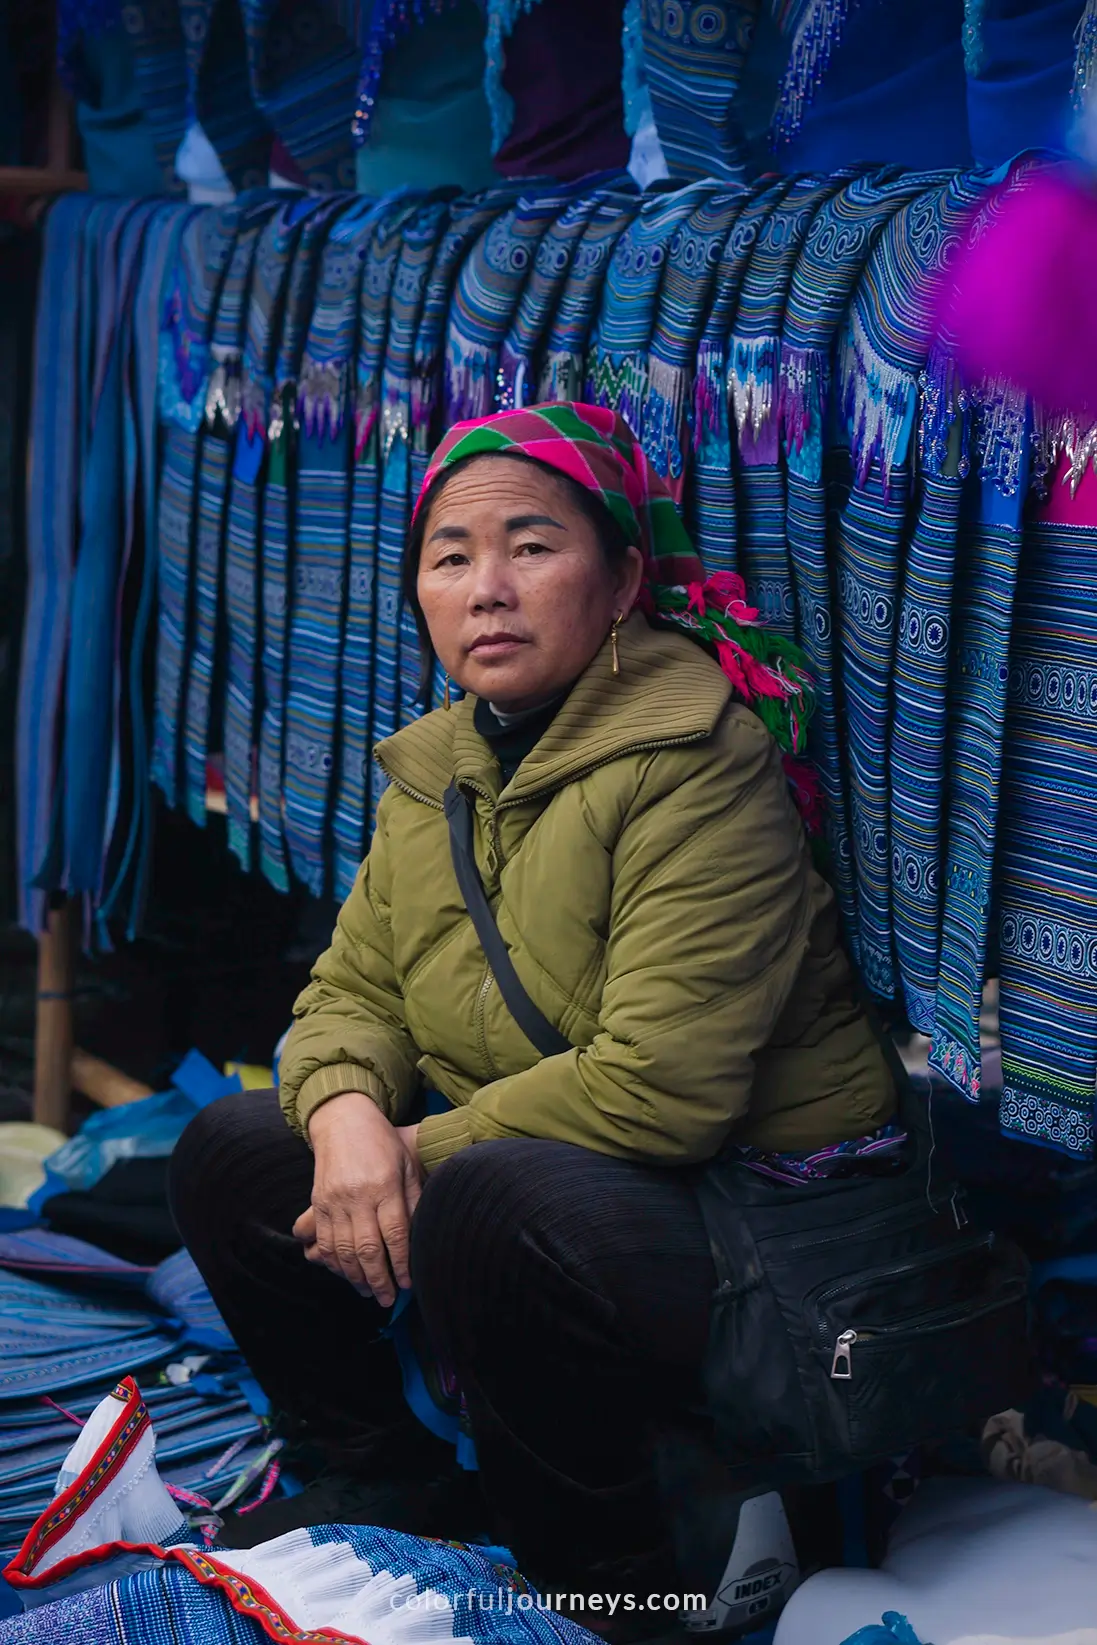 A woman sells colorful clothes at Bac Ha market, Vietnam